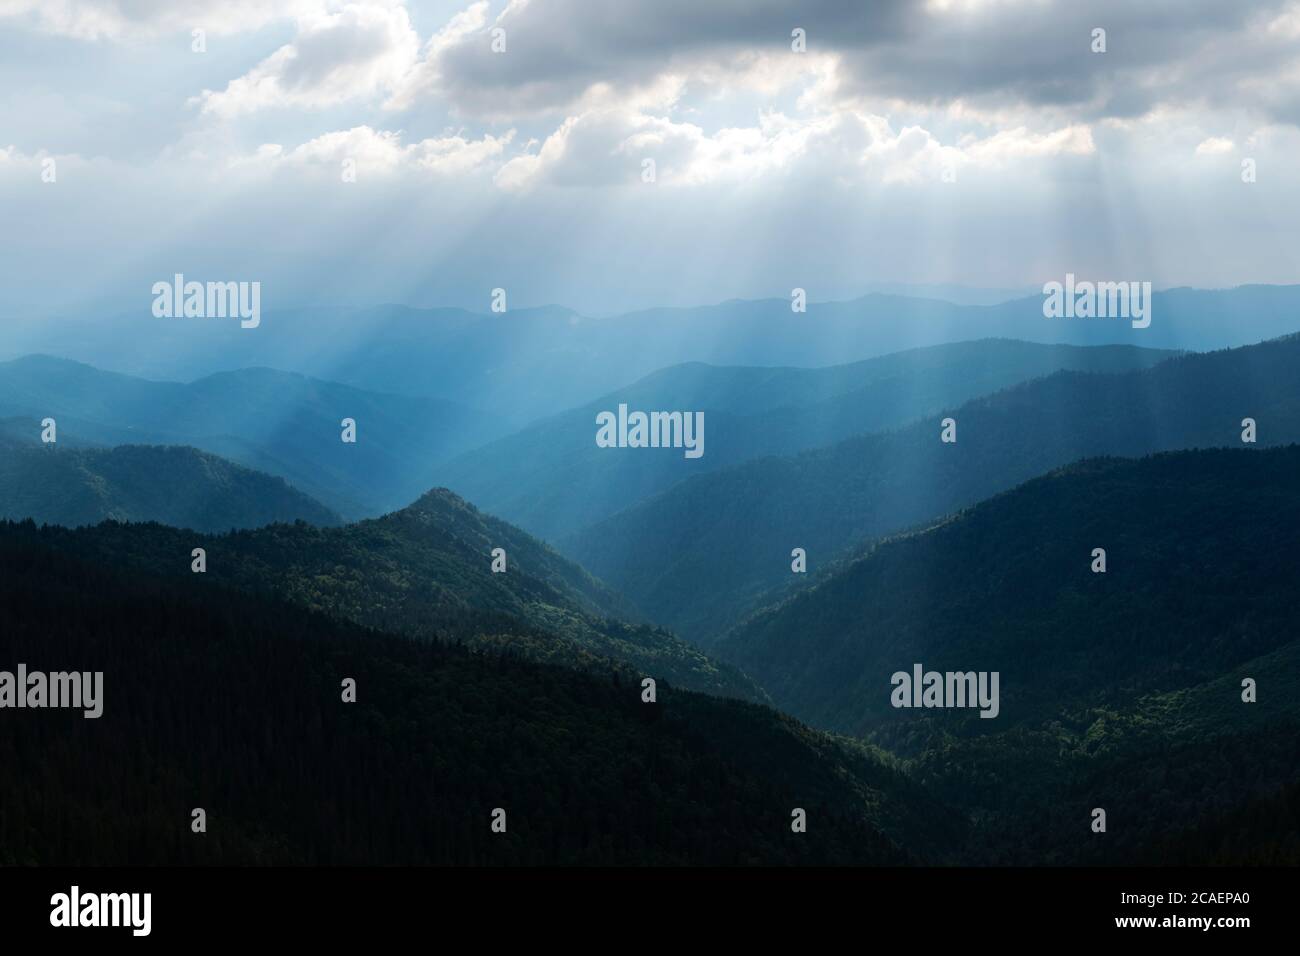 Pittoresche catene montuose che illuminano i raggi del sole sulle montagne dei Carpazi, in Ucraina. Fotografia di paesaggio Foto Stock